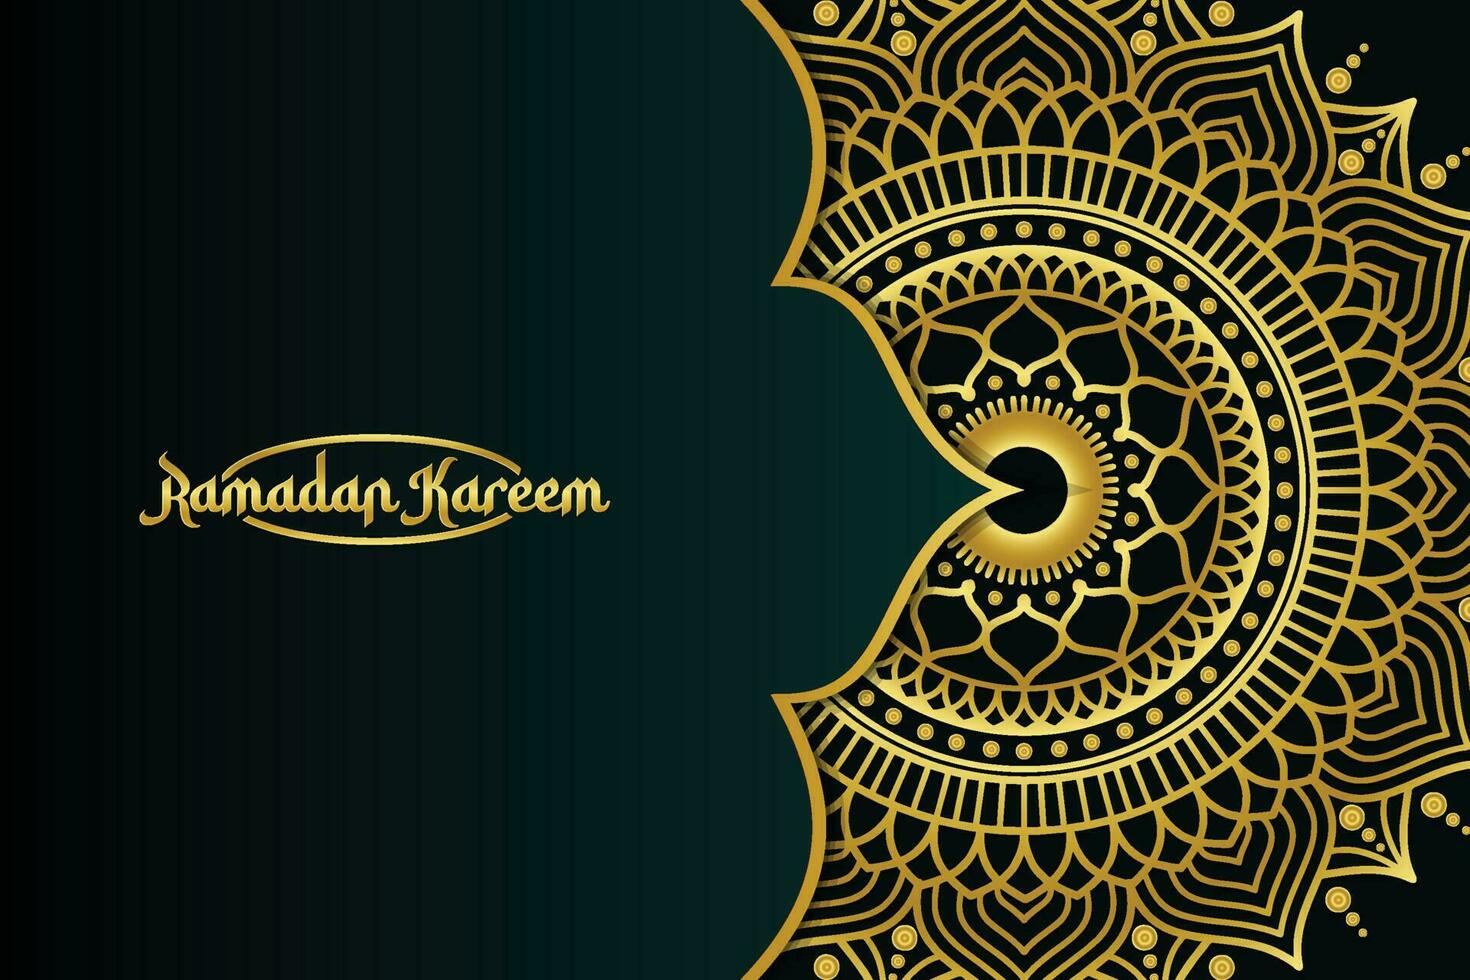 Ramadan Kareem in luxury style with golden mandala on dark background for Ramadan Mubarak. ramadan style, ramadan kareem. background vector illustration.